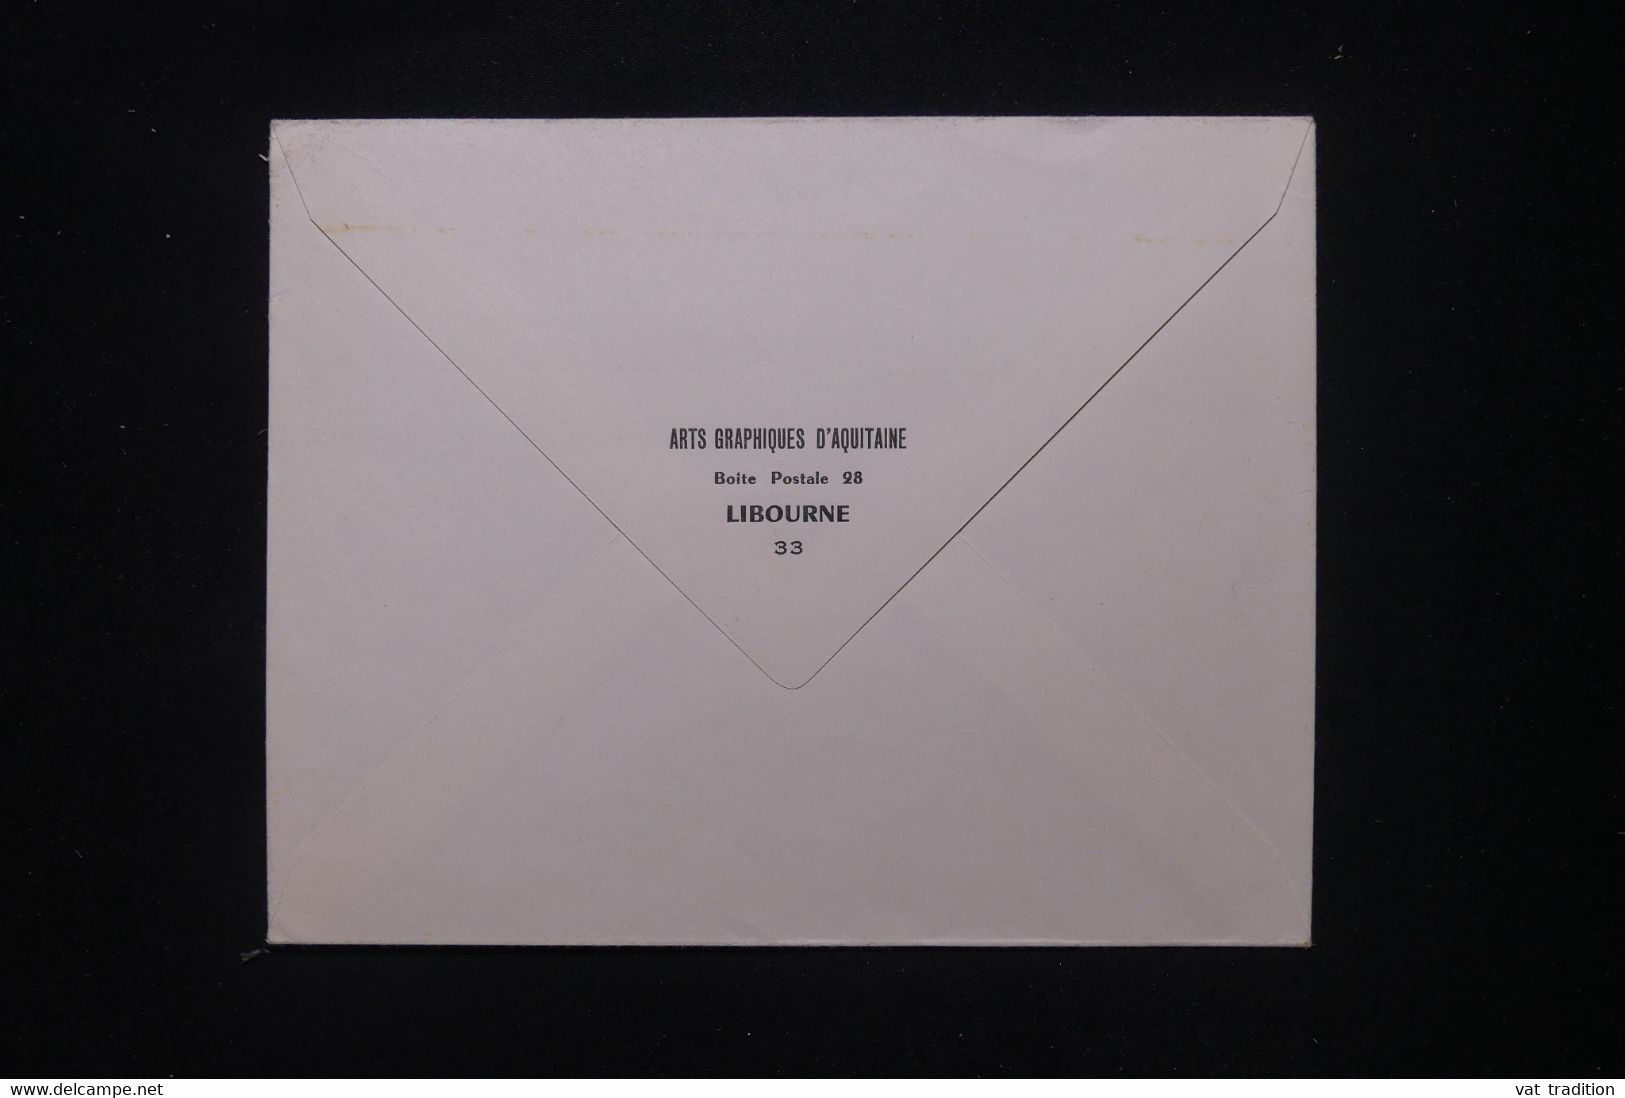 FRANCE - Timbre De Grève De Libourne Sur Enveloppe En 1968  - L 107464 - Documents